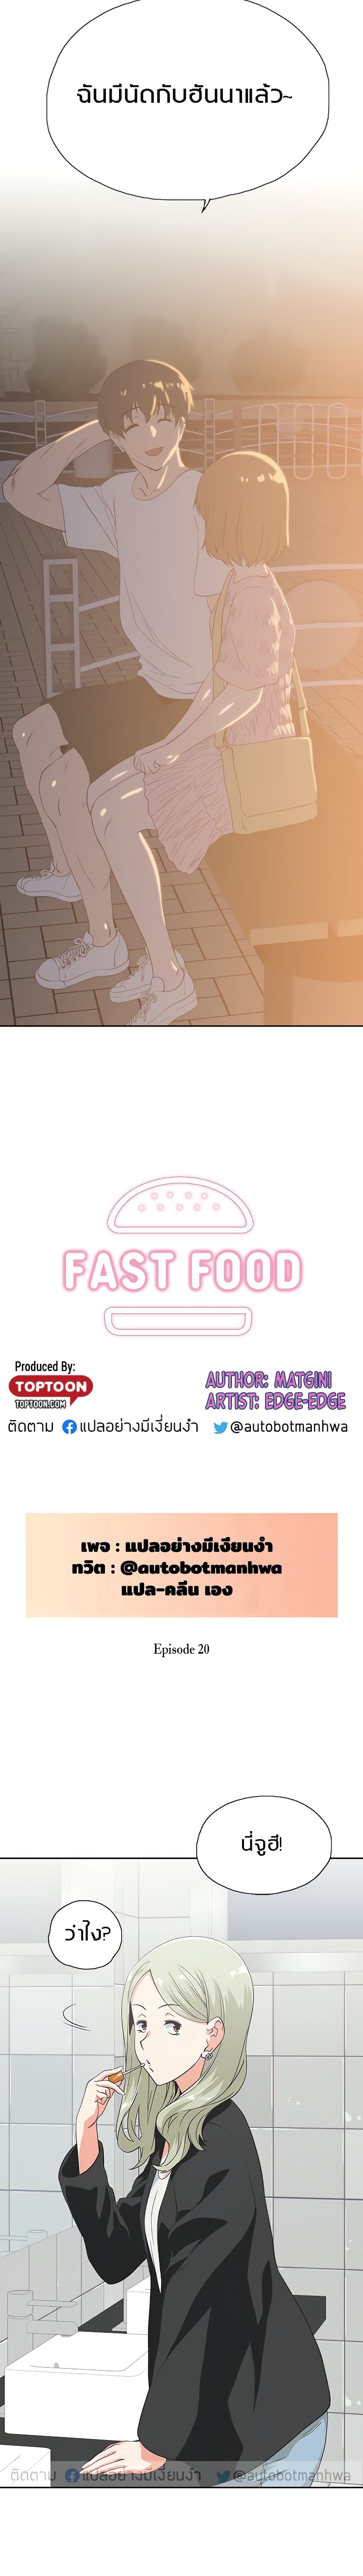 Fast Food 20-20